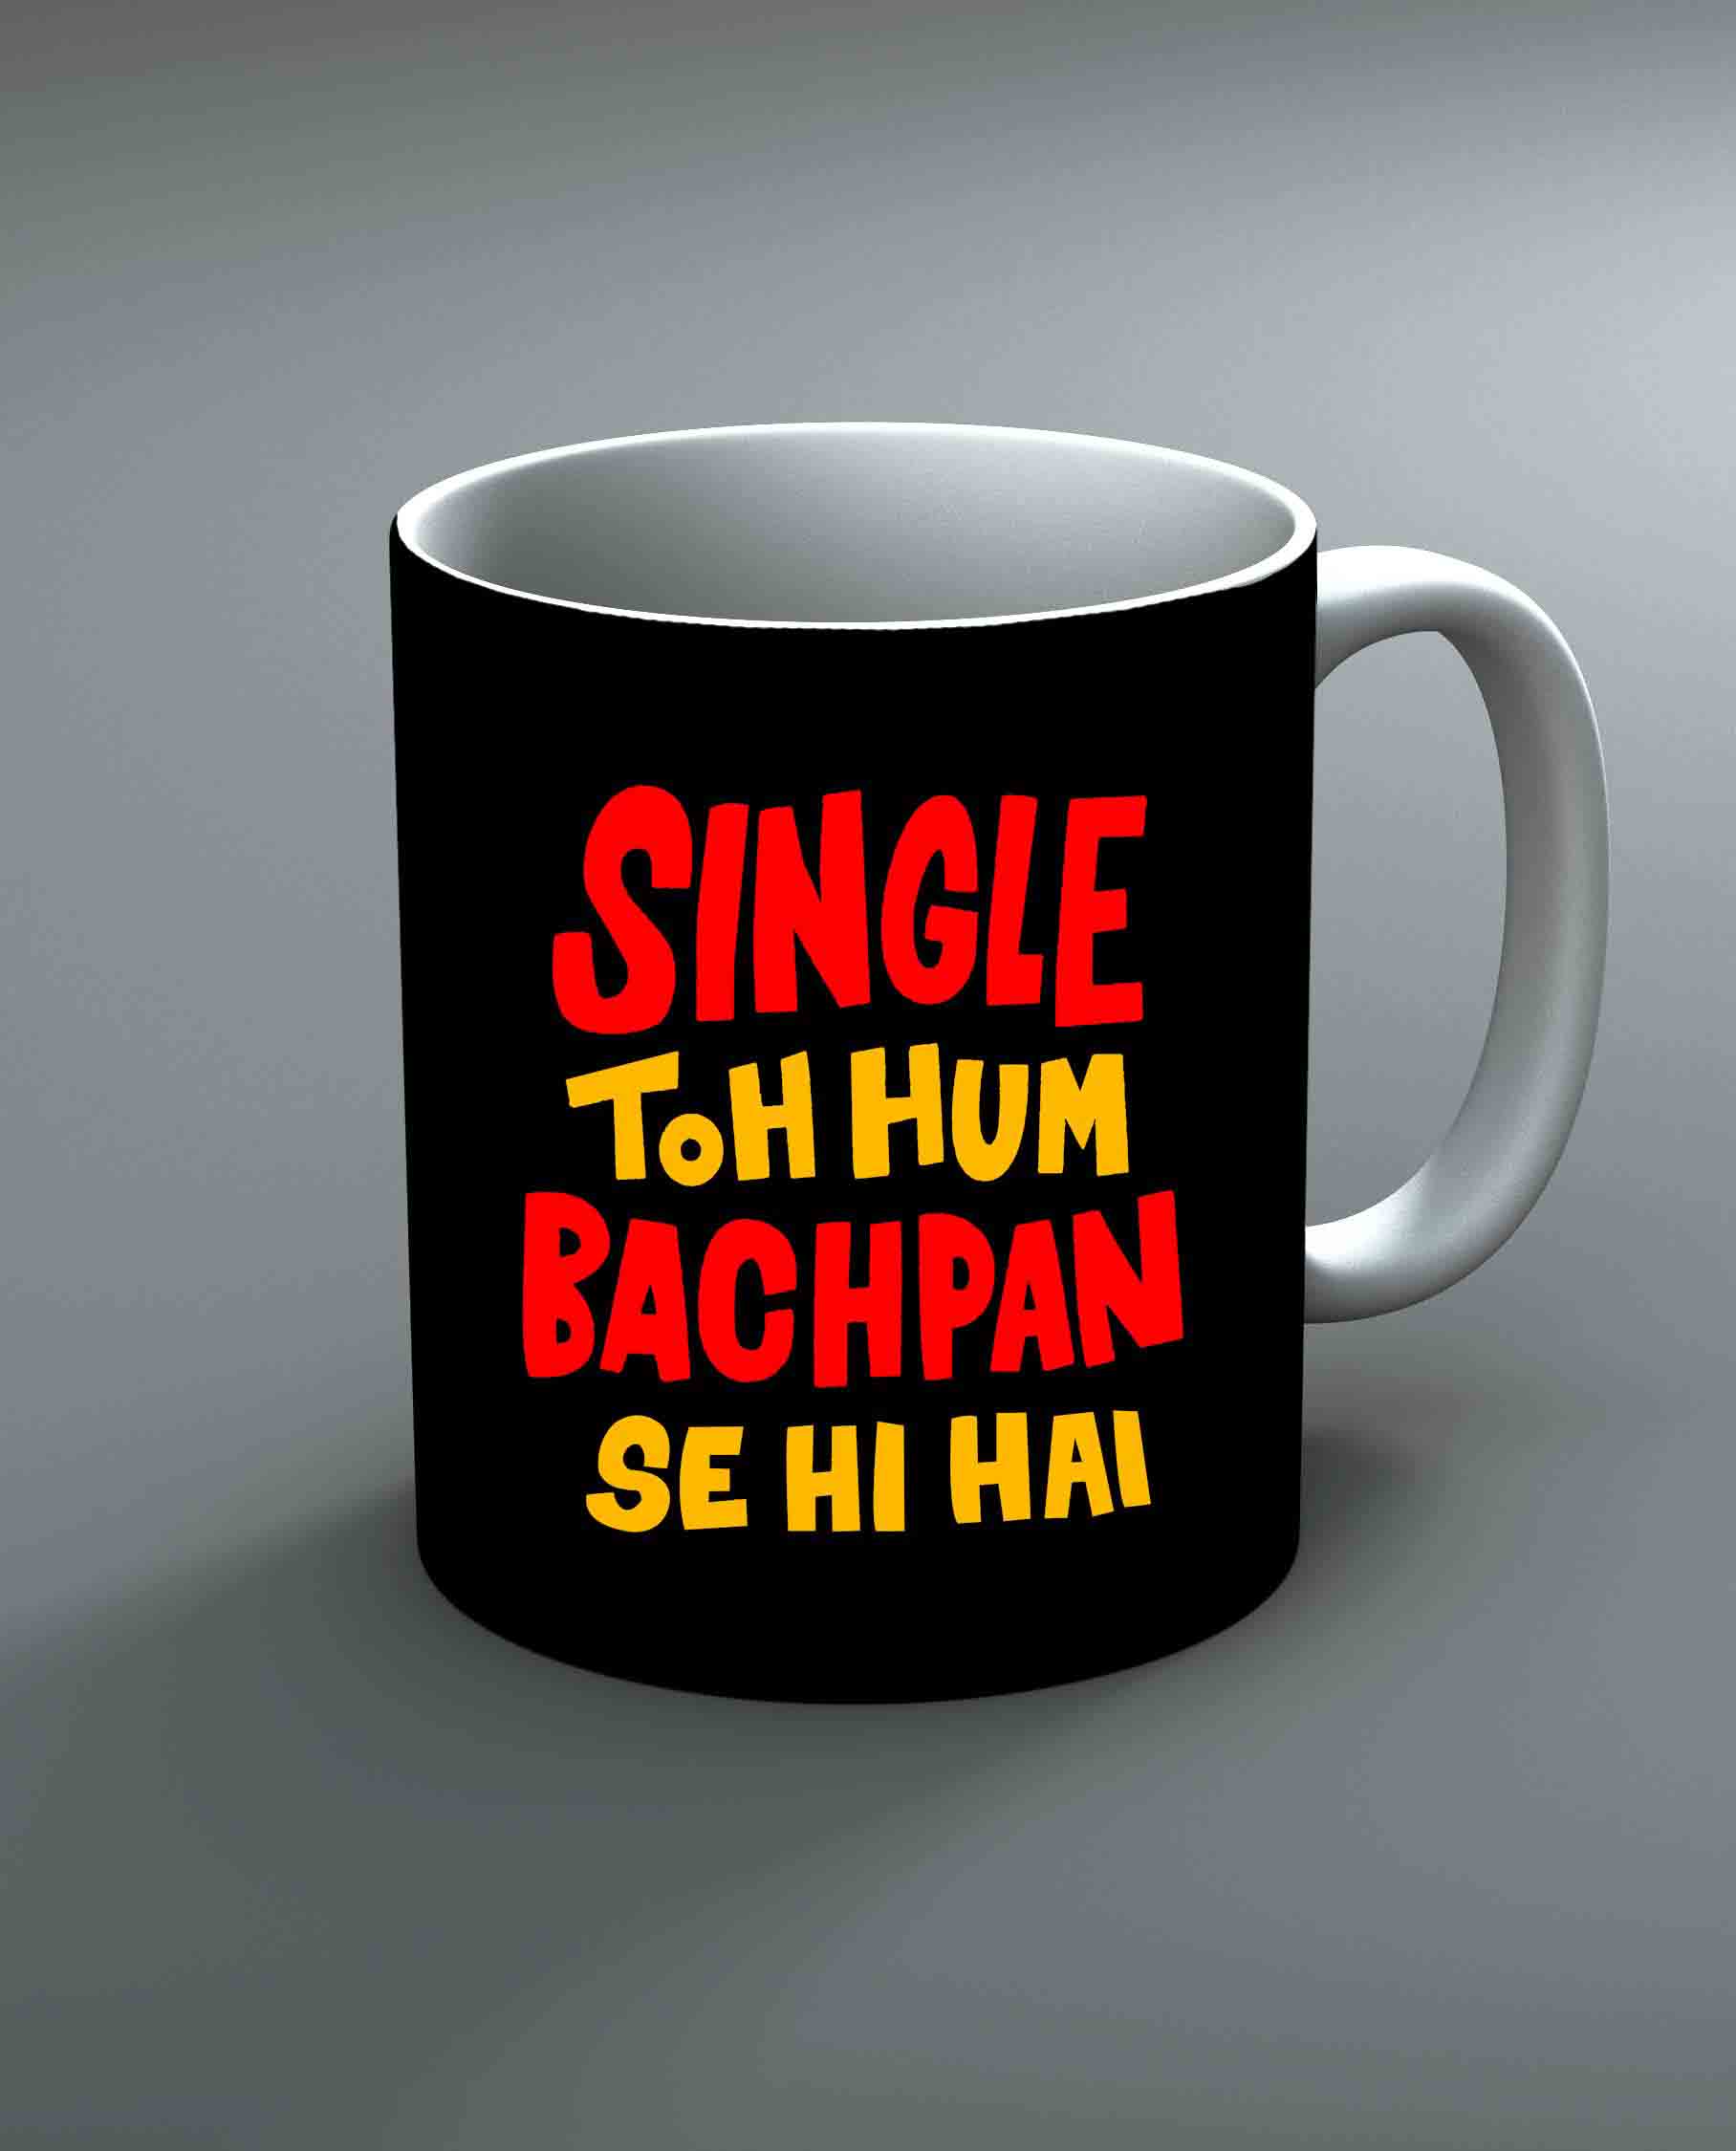 Single Toh Hum Bachpan Se Hi Hai Mug By Roshnai - Pickshop.Pk